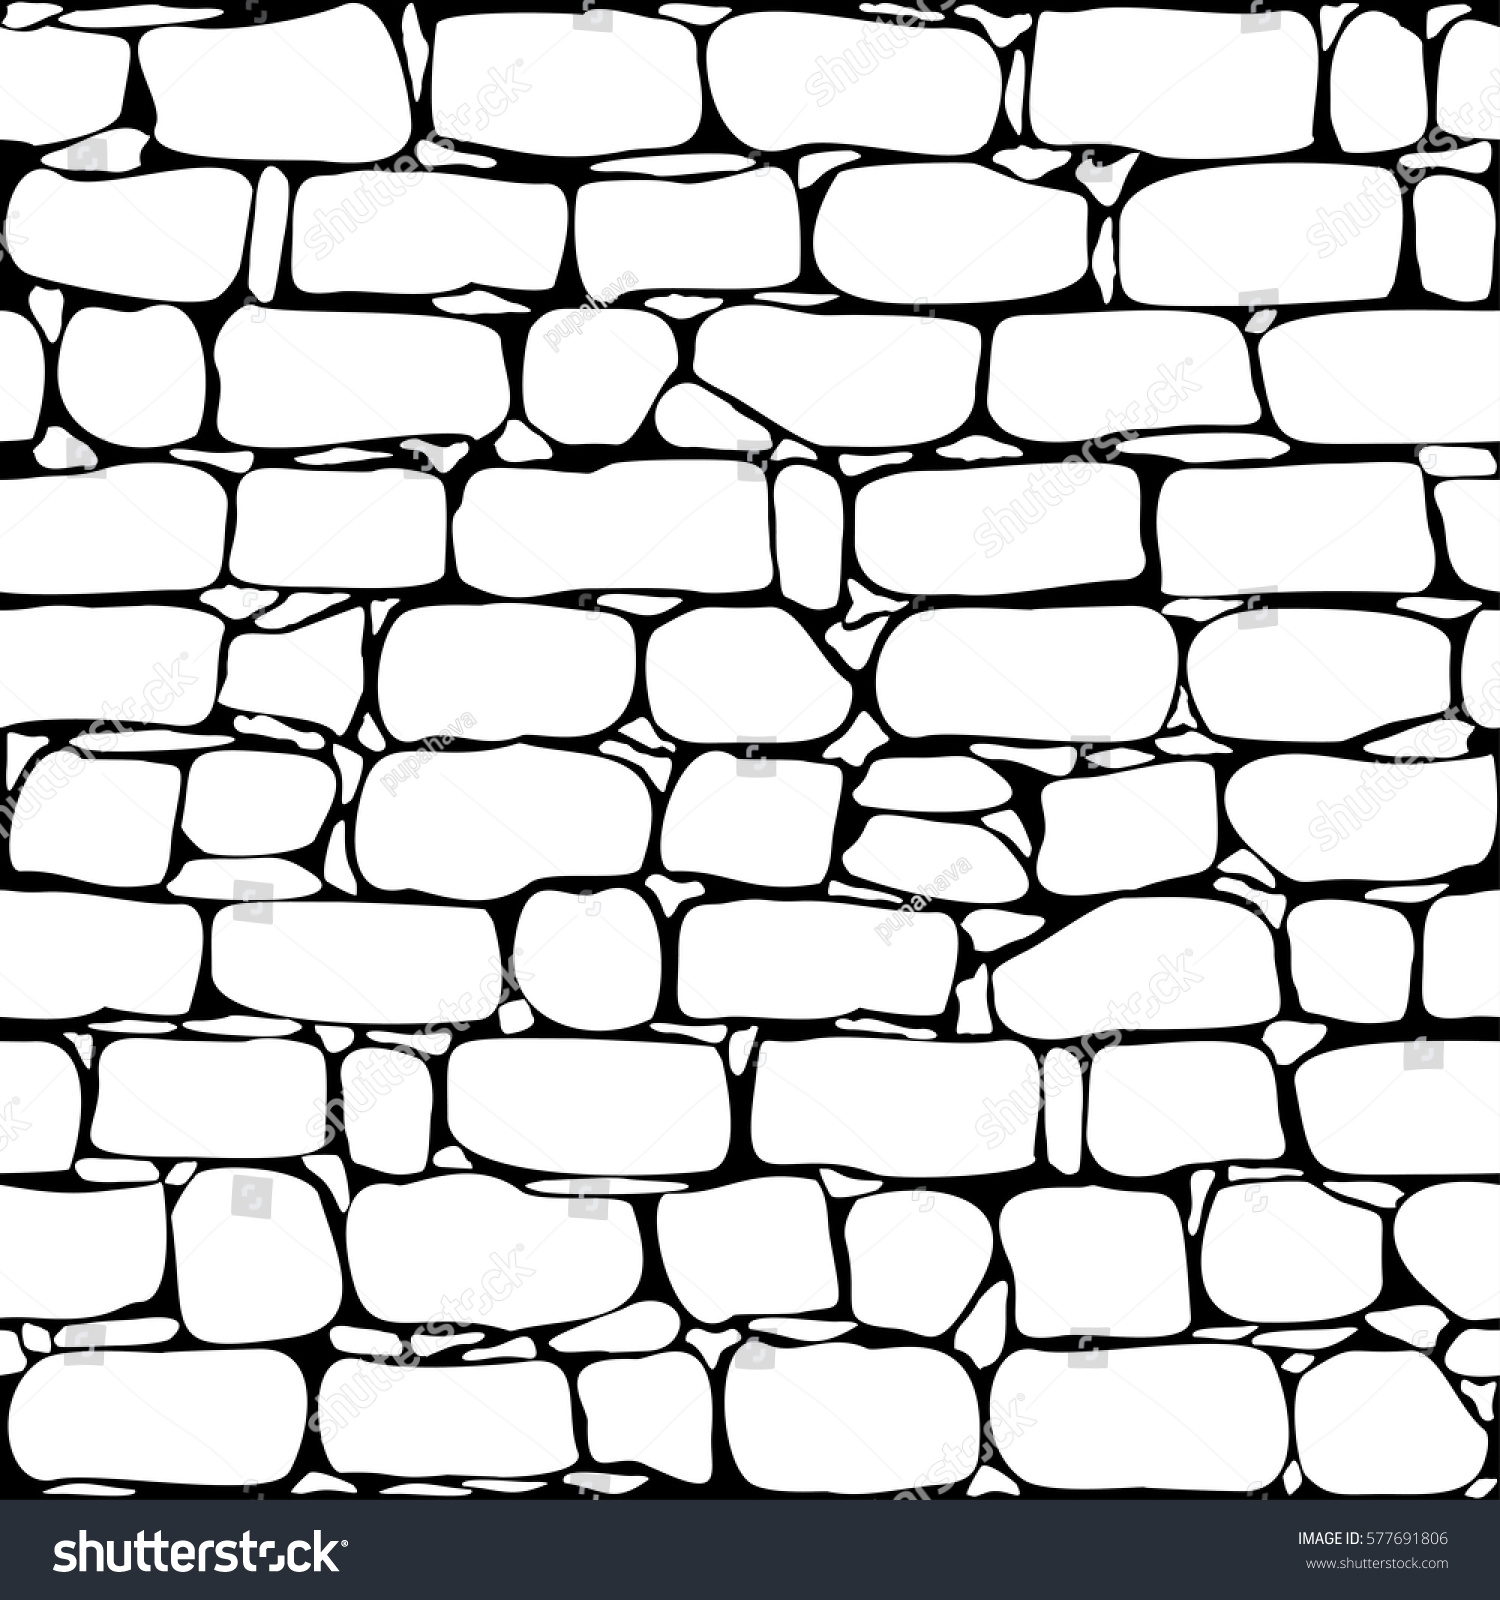 Stone wall roughly mortared: изображения, стоковые фотографии и векторная г...